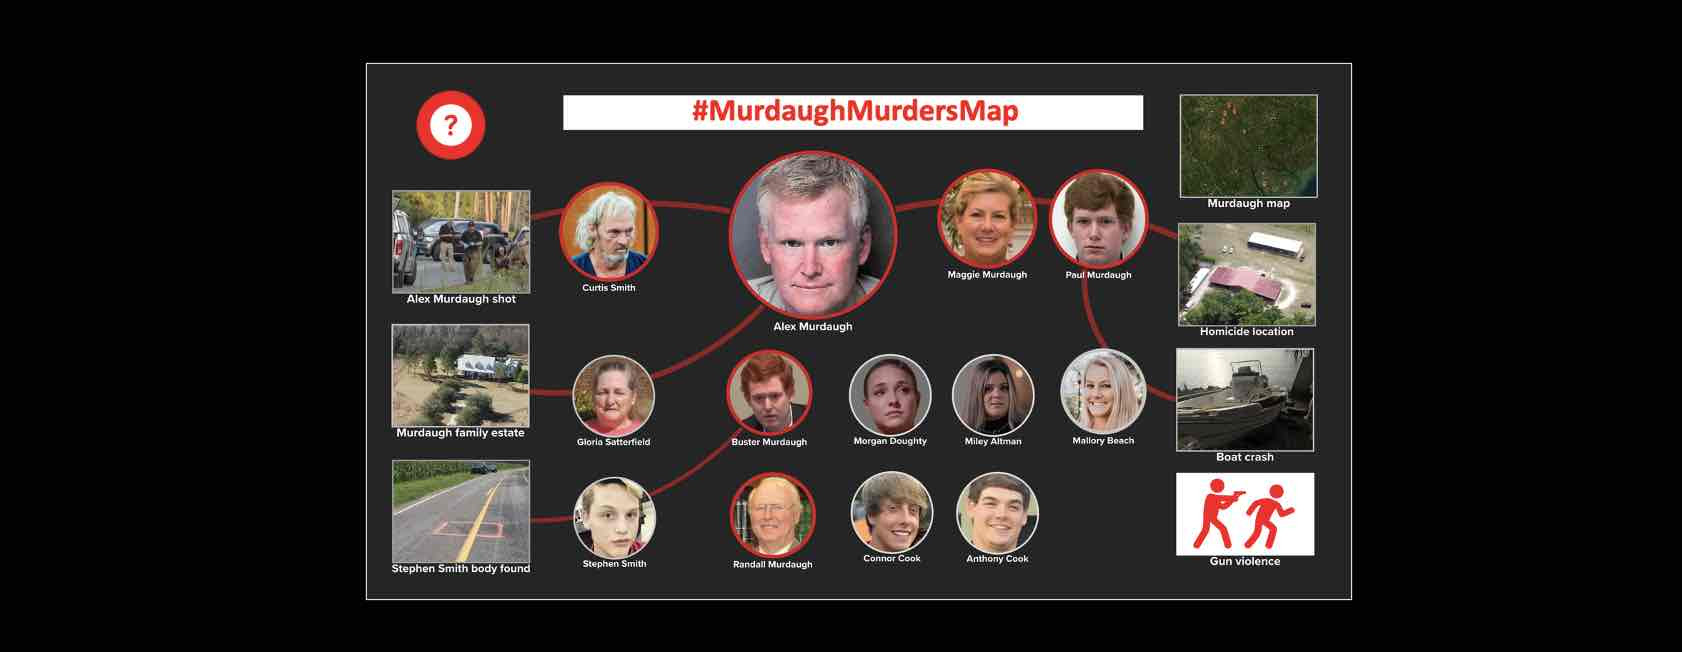 Murdaugh Murders Map #MurdaughMurdersMap